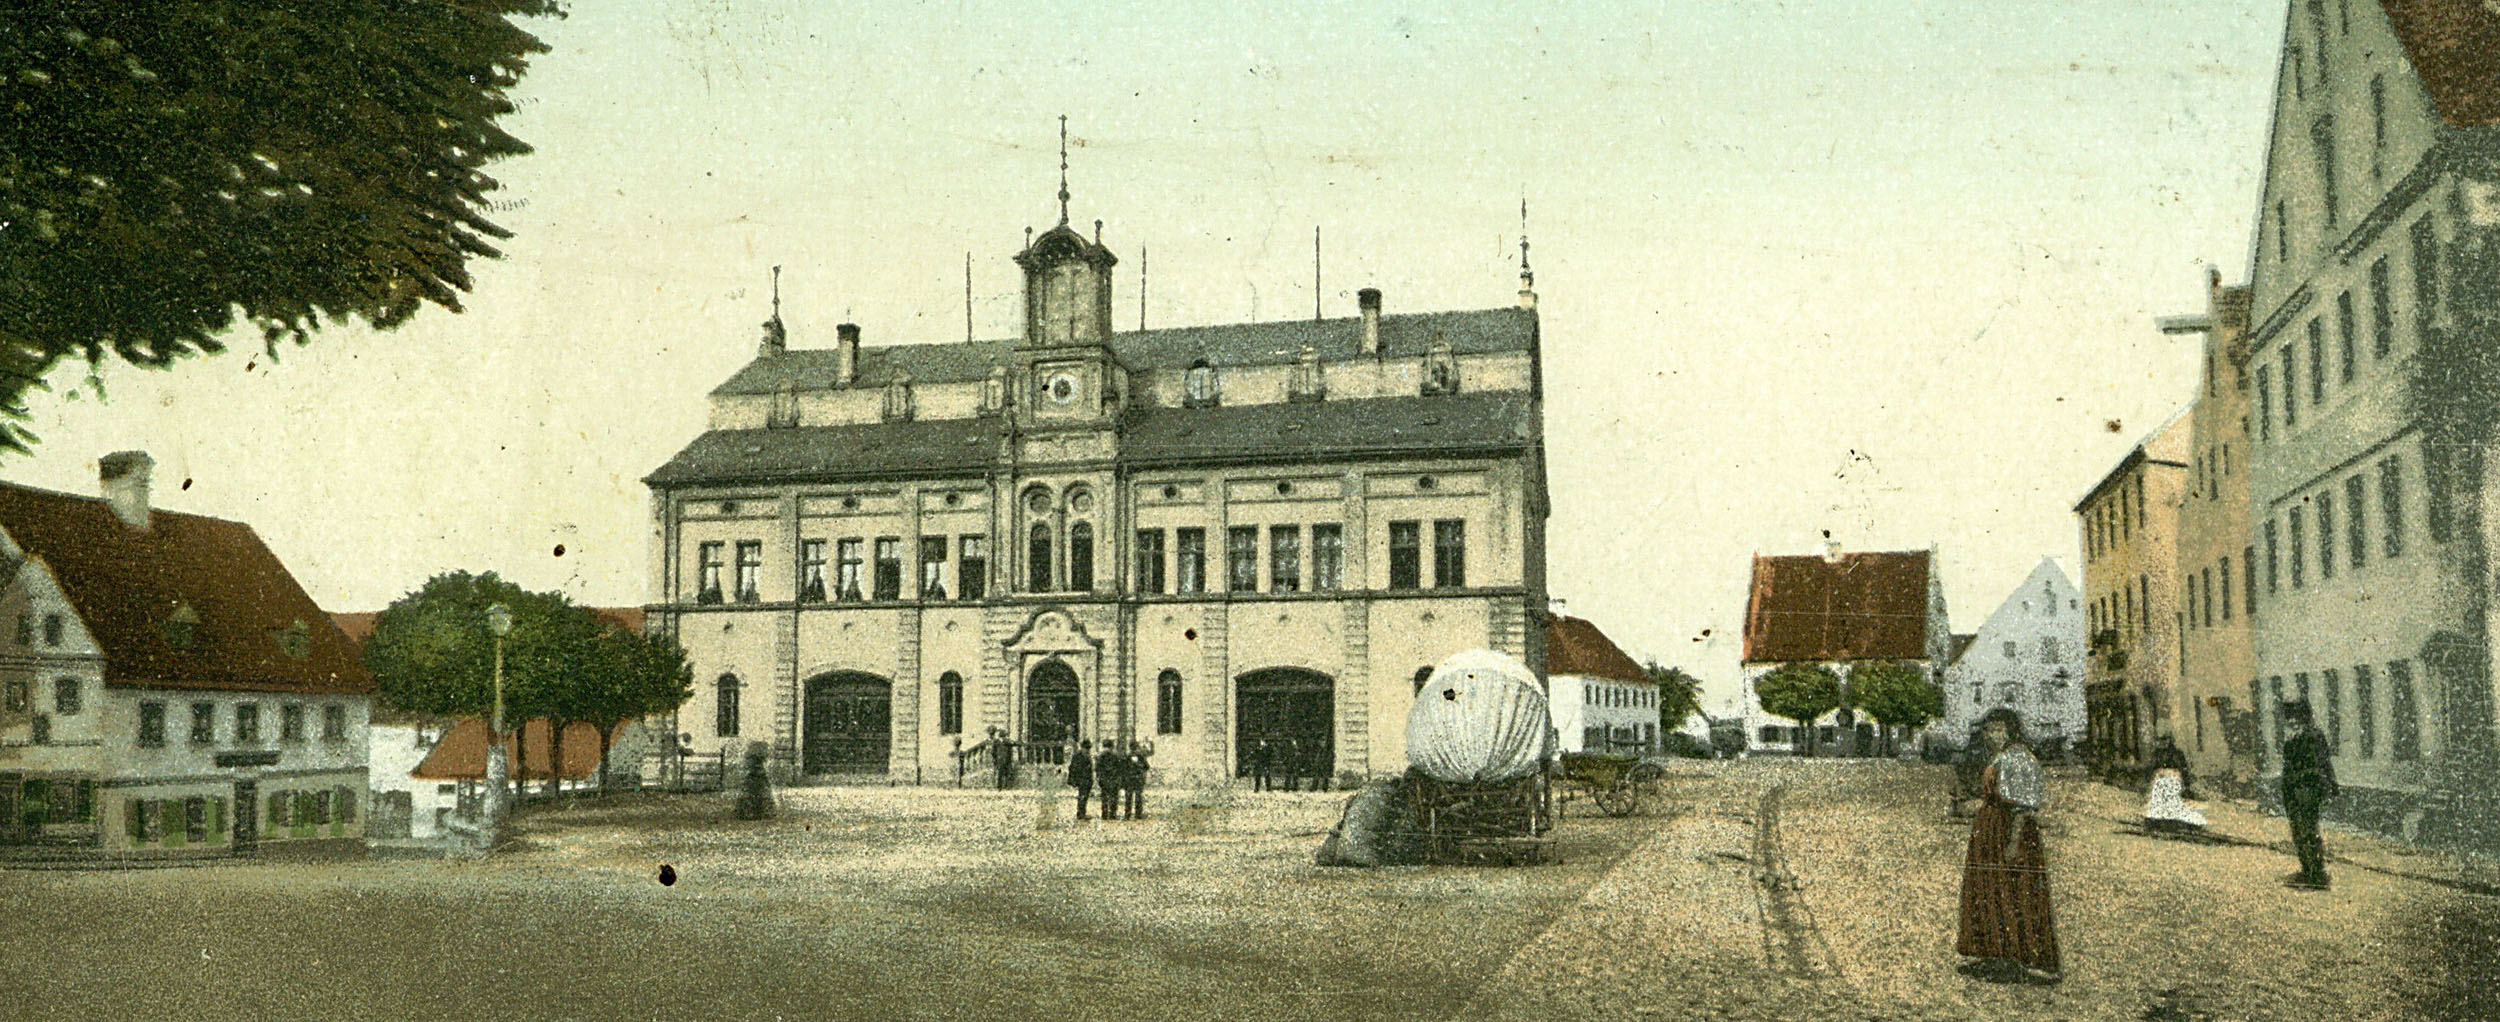 Das Rat-Haus von Wolnzach